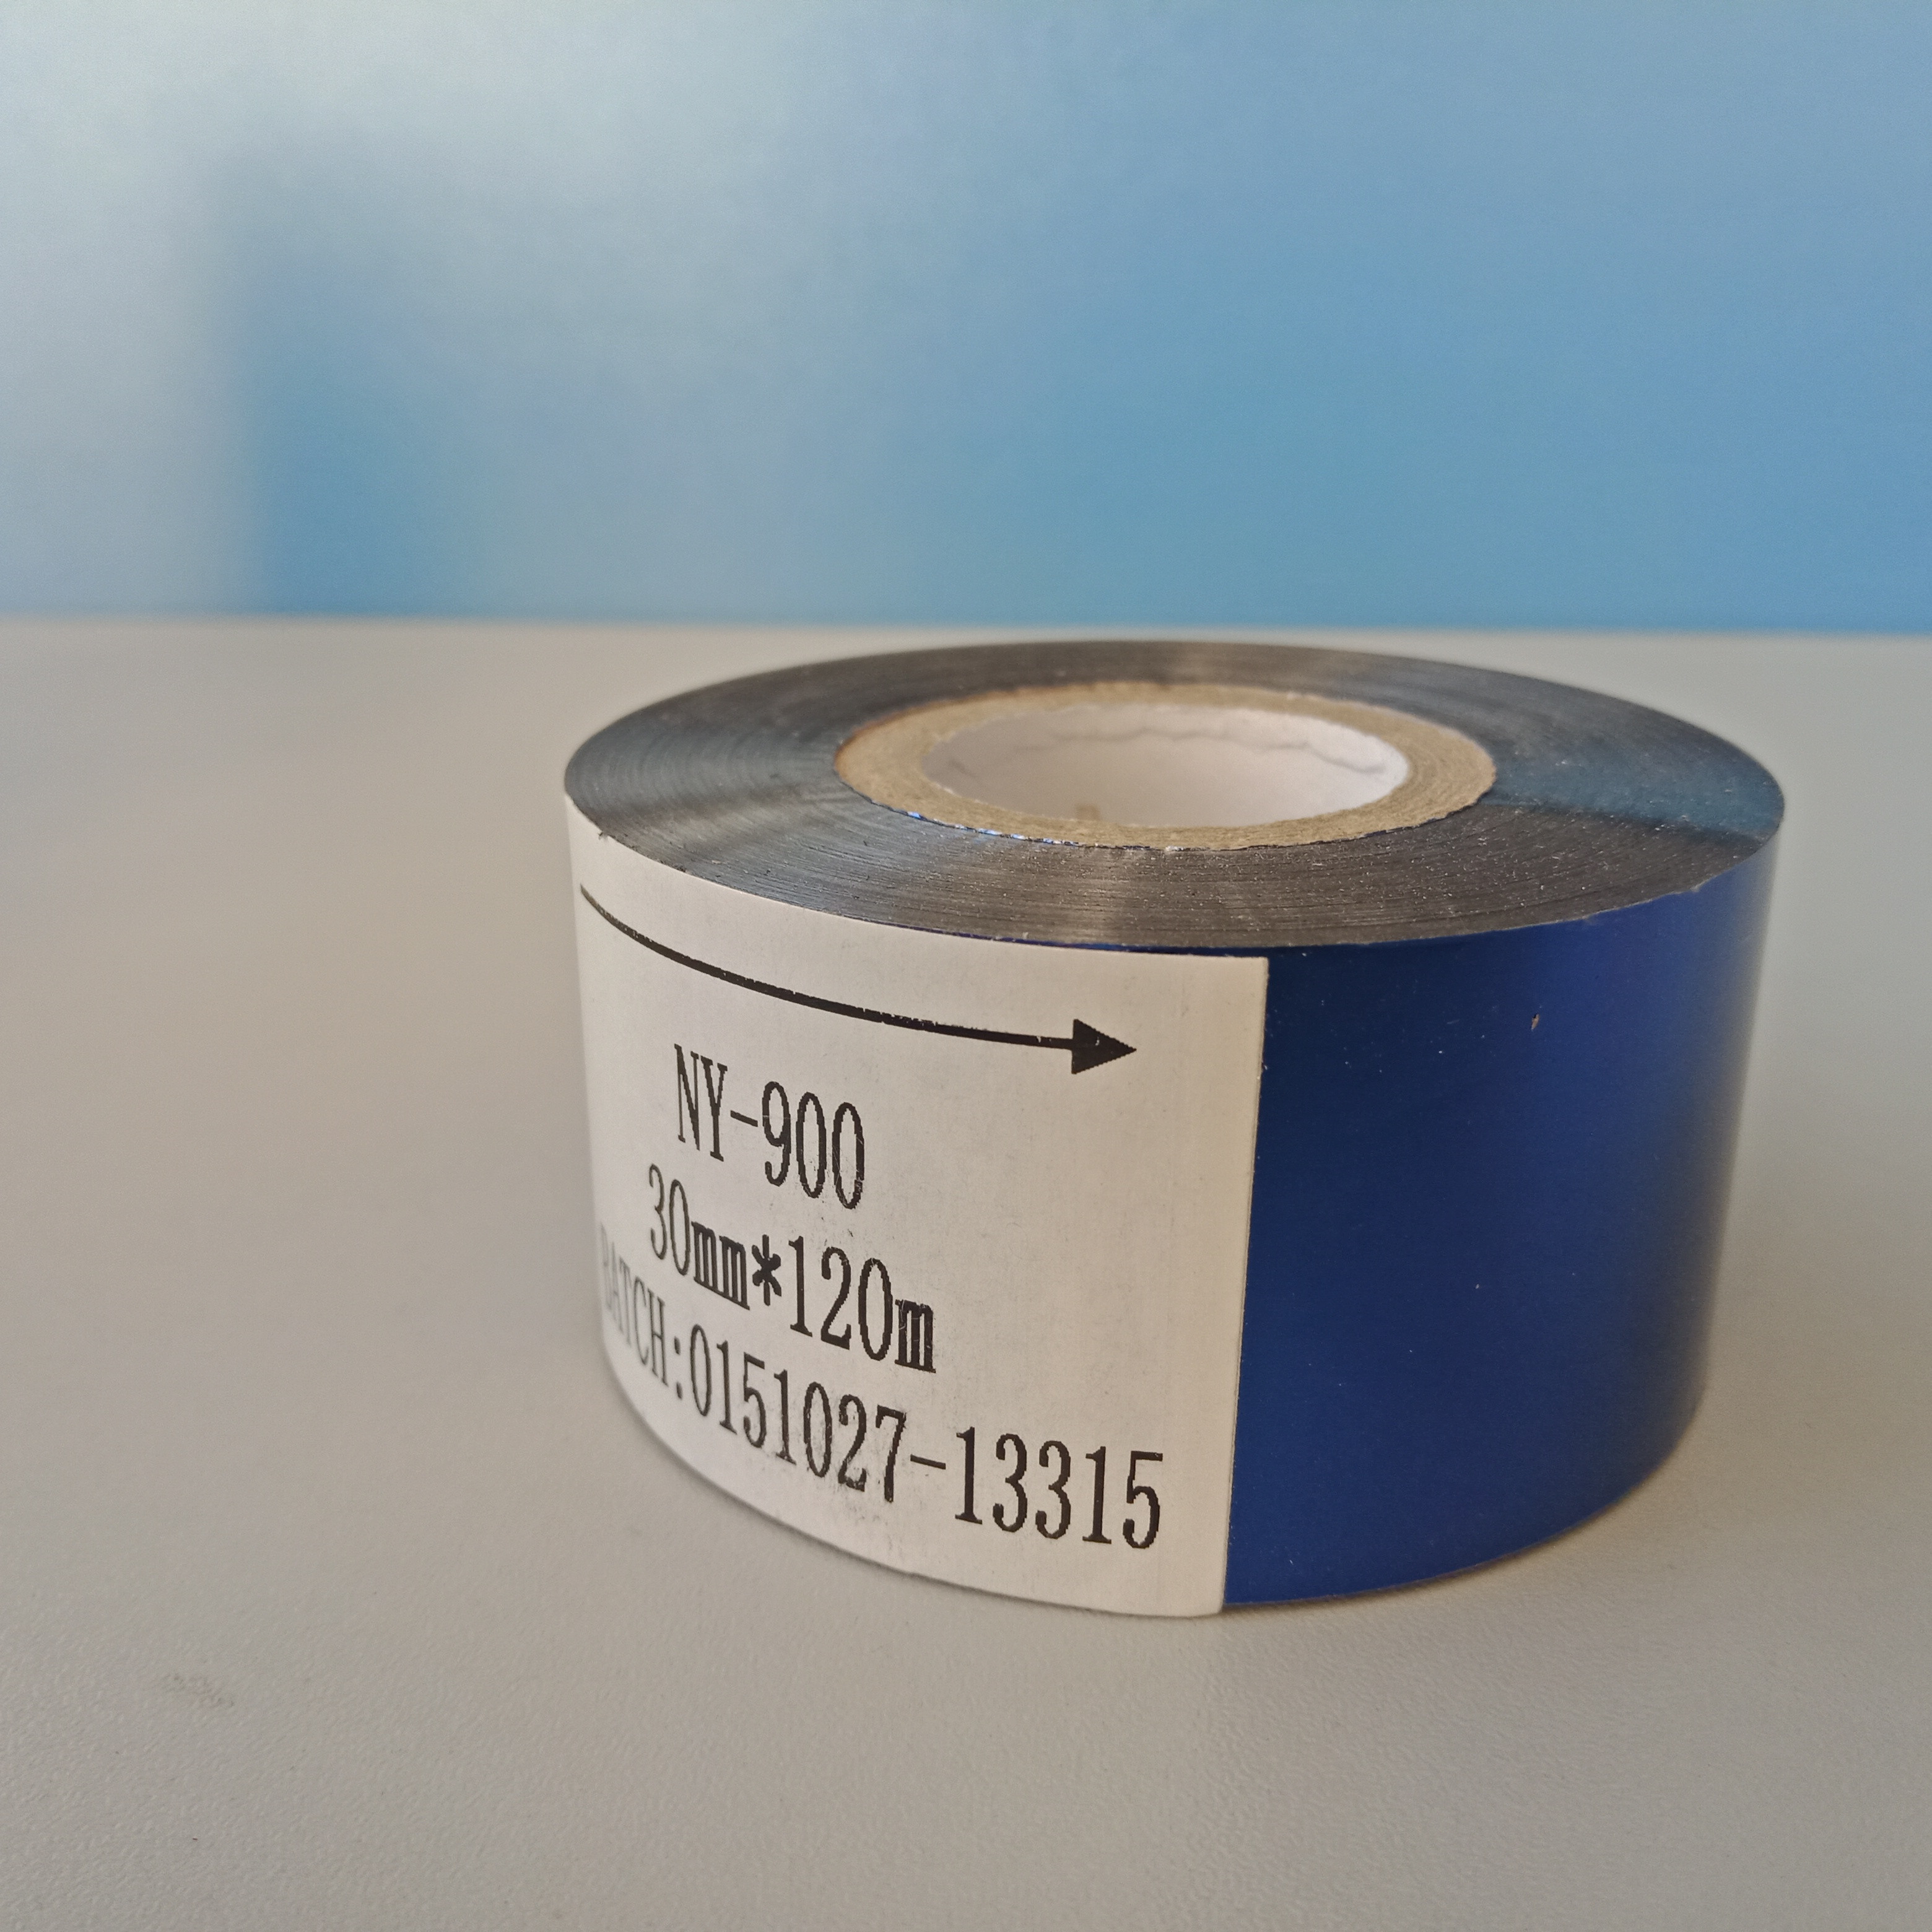 SCF-800 hot stamping foil, hot stamp ribbon